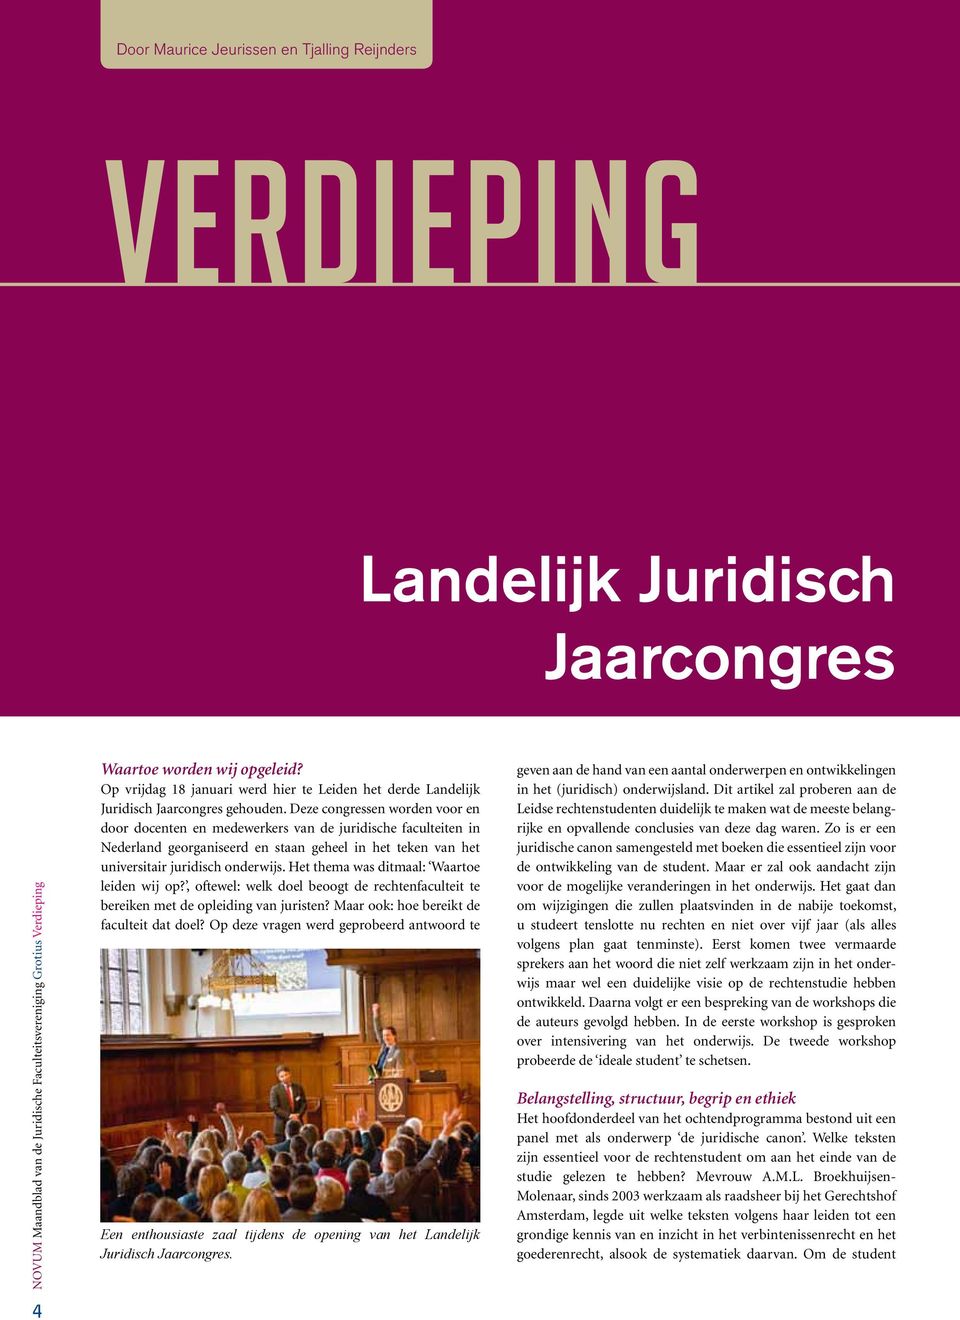 Deze congressen worden voor en door docenten en medewerkers van de juridische faculteiten in Nederland georganiseerd en staan geheel in het teken van het universitair juridisch onderwijs.